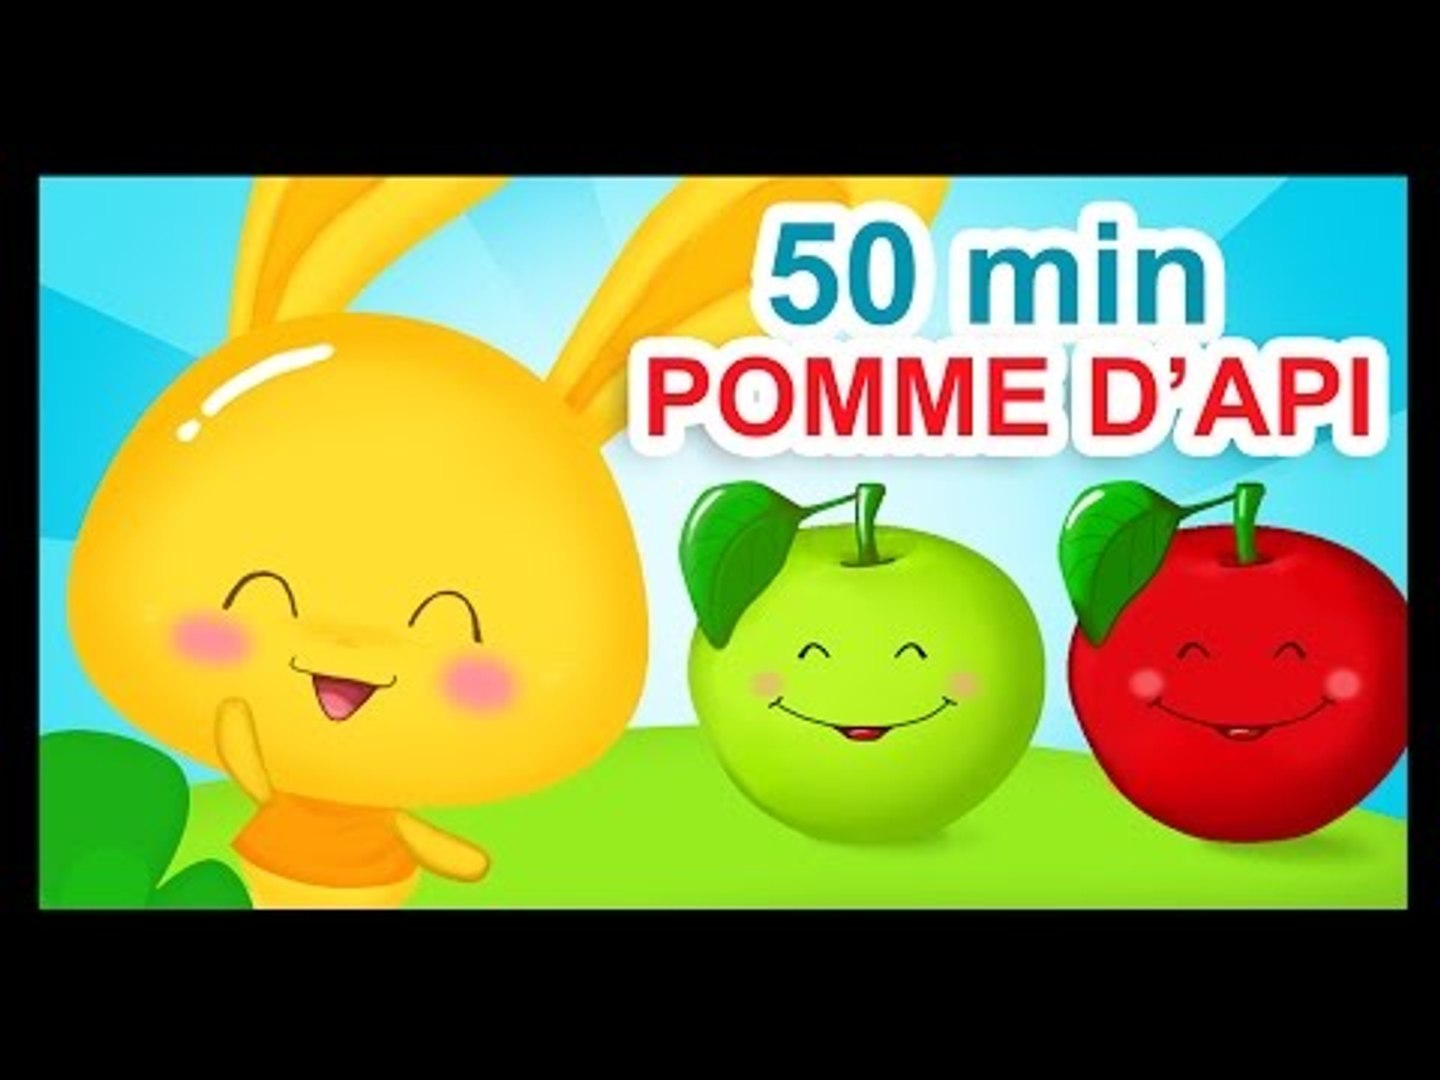 Pomme de reinette et pomme d'api - Chanson des Titounis - Vidéo Dailymotion